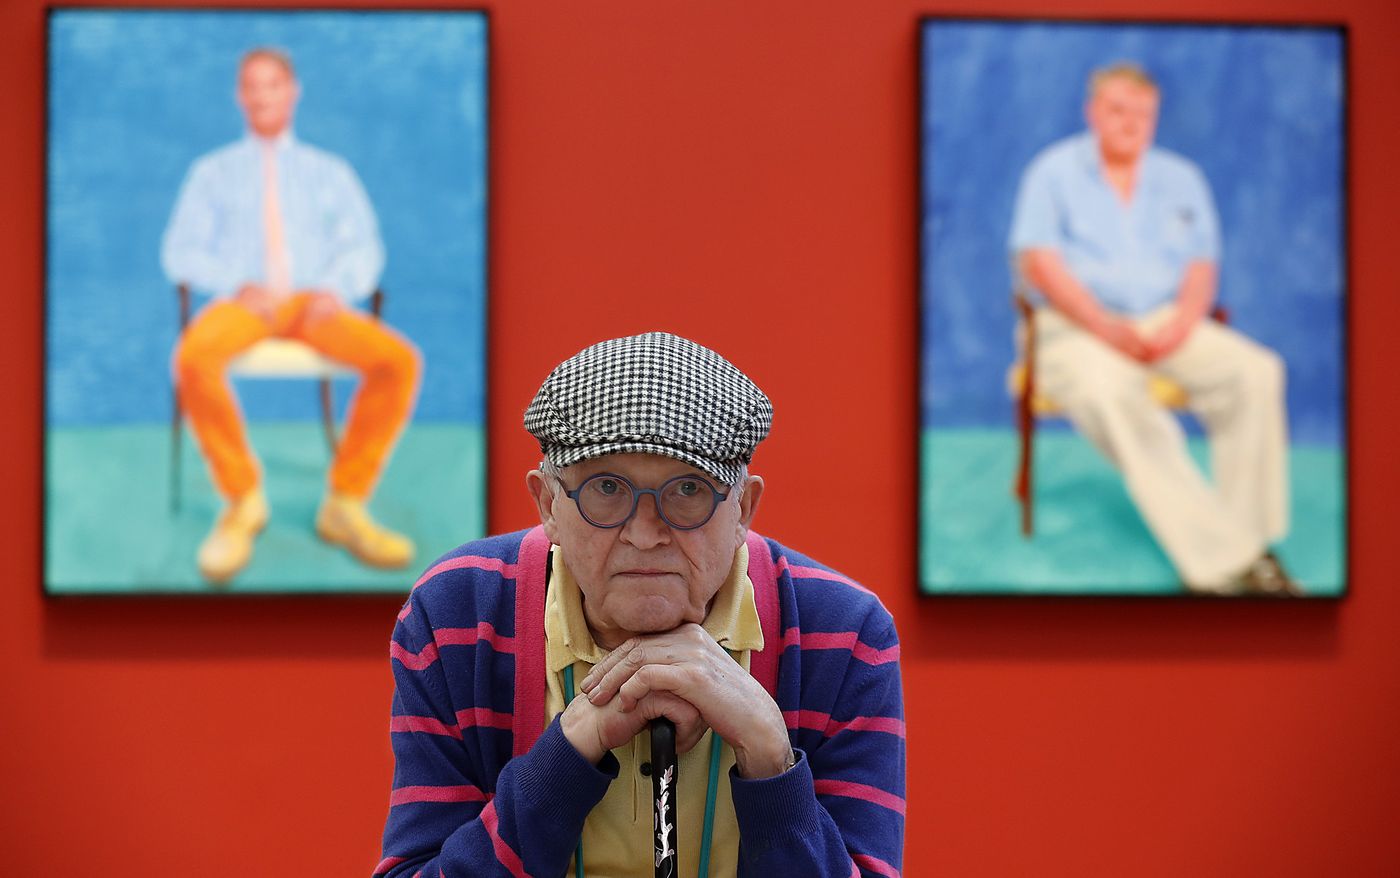 Ni Monet ni Van Gogh, la pintura más cara de toda la historia es de David Hockney